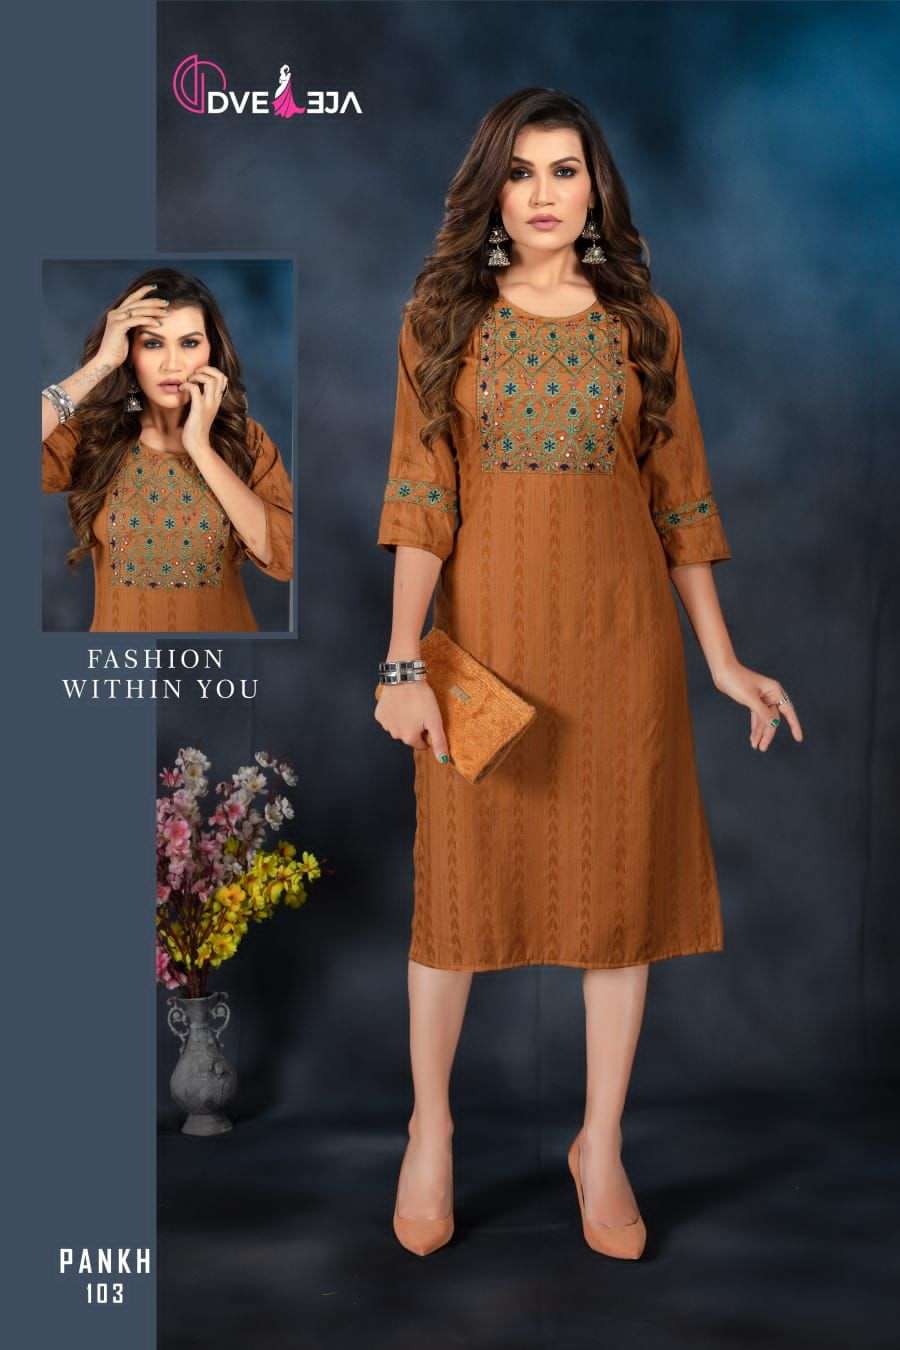 dveeja fashion pankh 101-106 series fancy rayon branded kurtis wholesale price surat